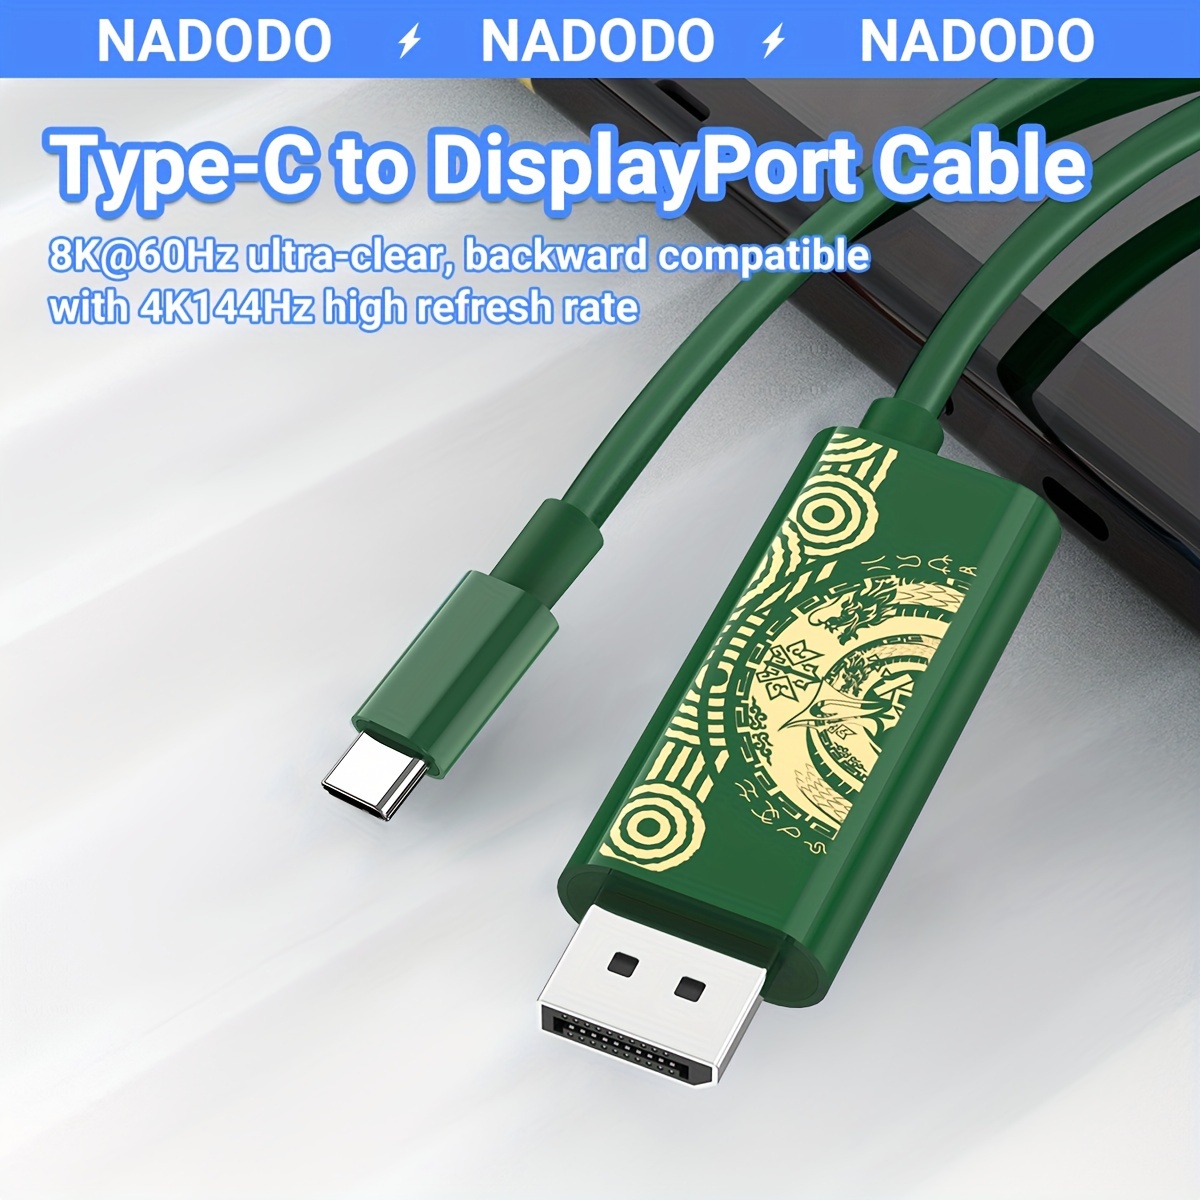 Reemplazo de la base de carga para interruptor y cargador para Switch OLED  Joy Cons, estación de carga para interruptor con un cable de carga USB tipo